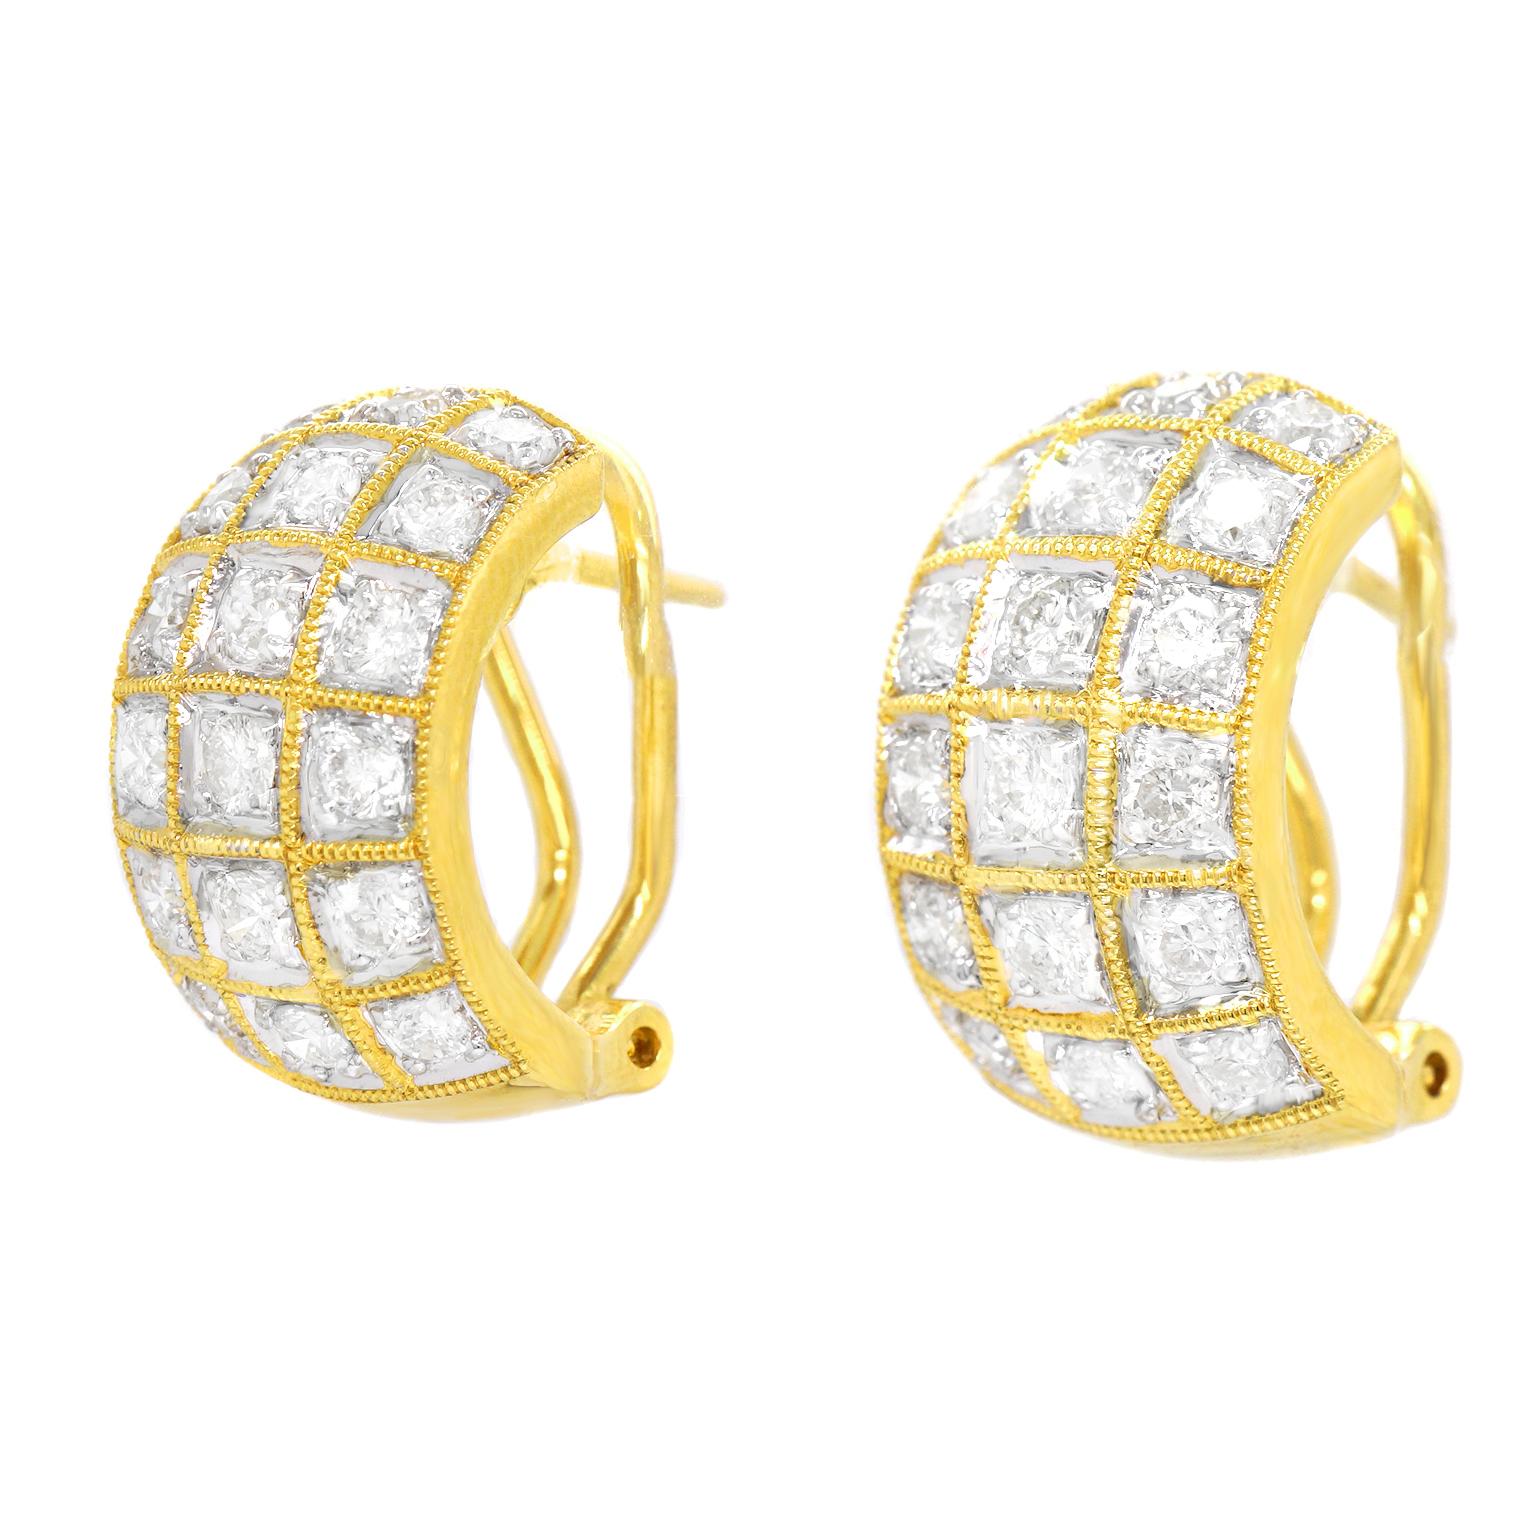 Brilliant Cut 3.0 Carat Diamond-Set Gold Earrings